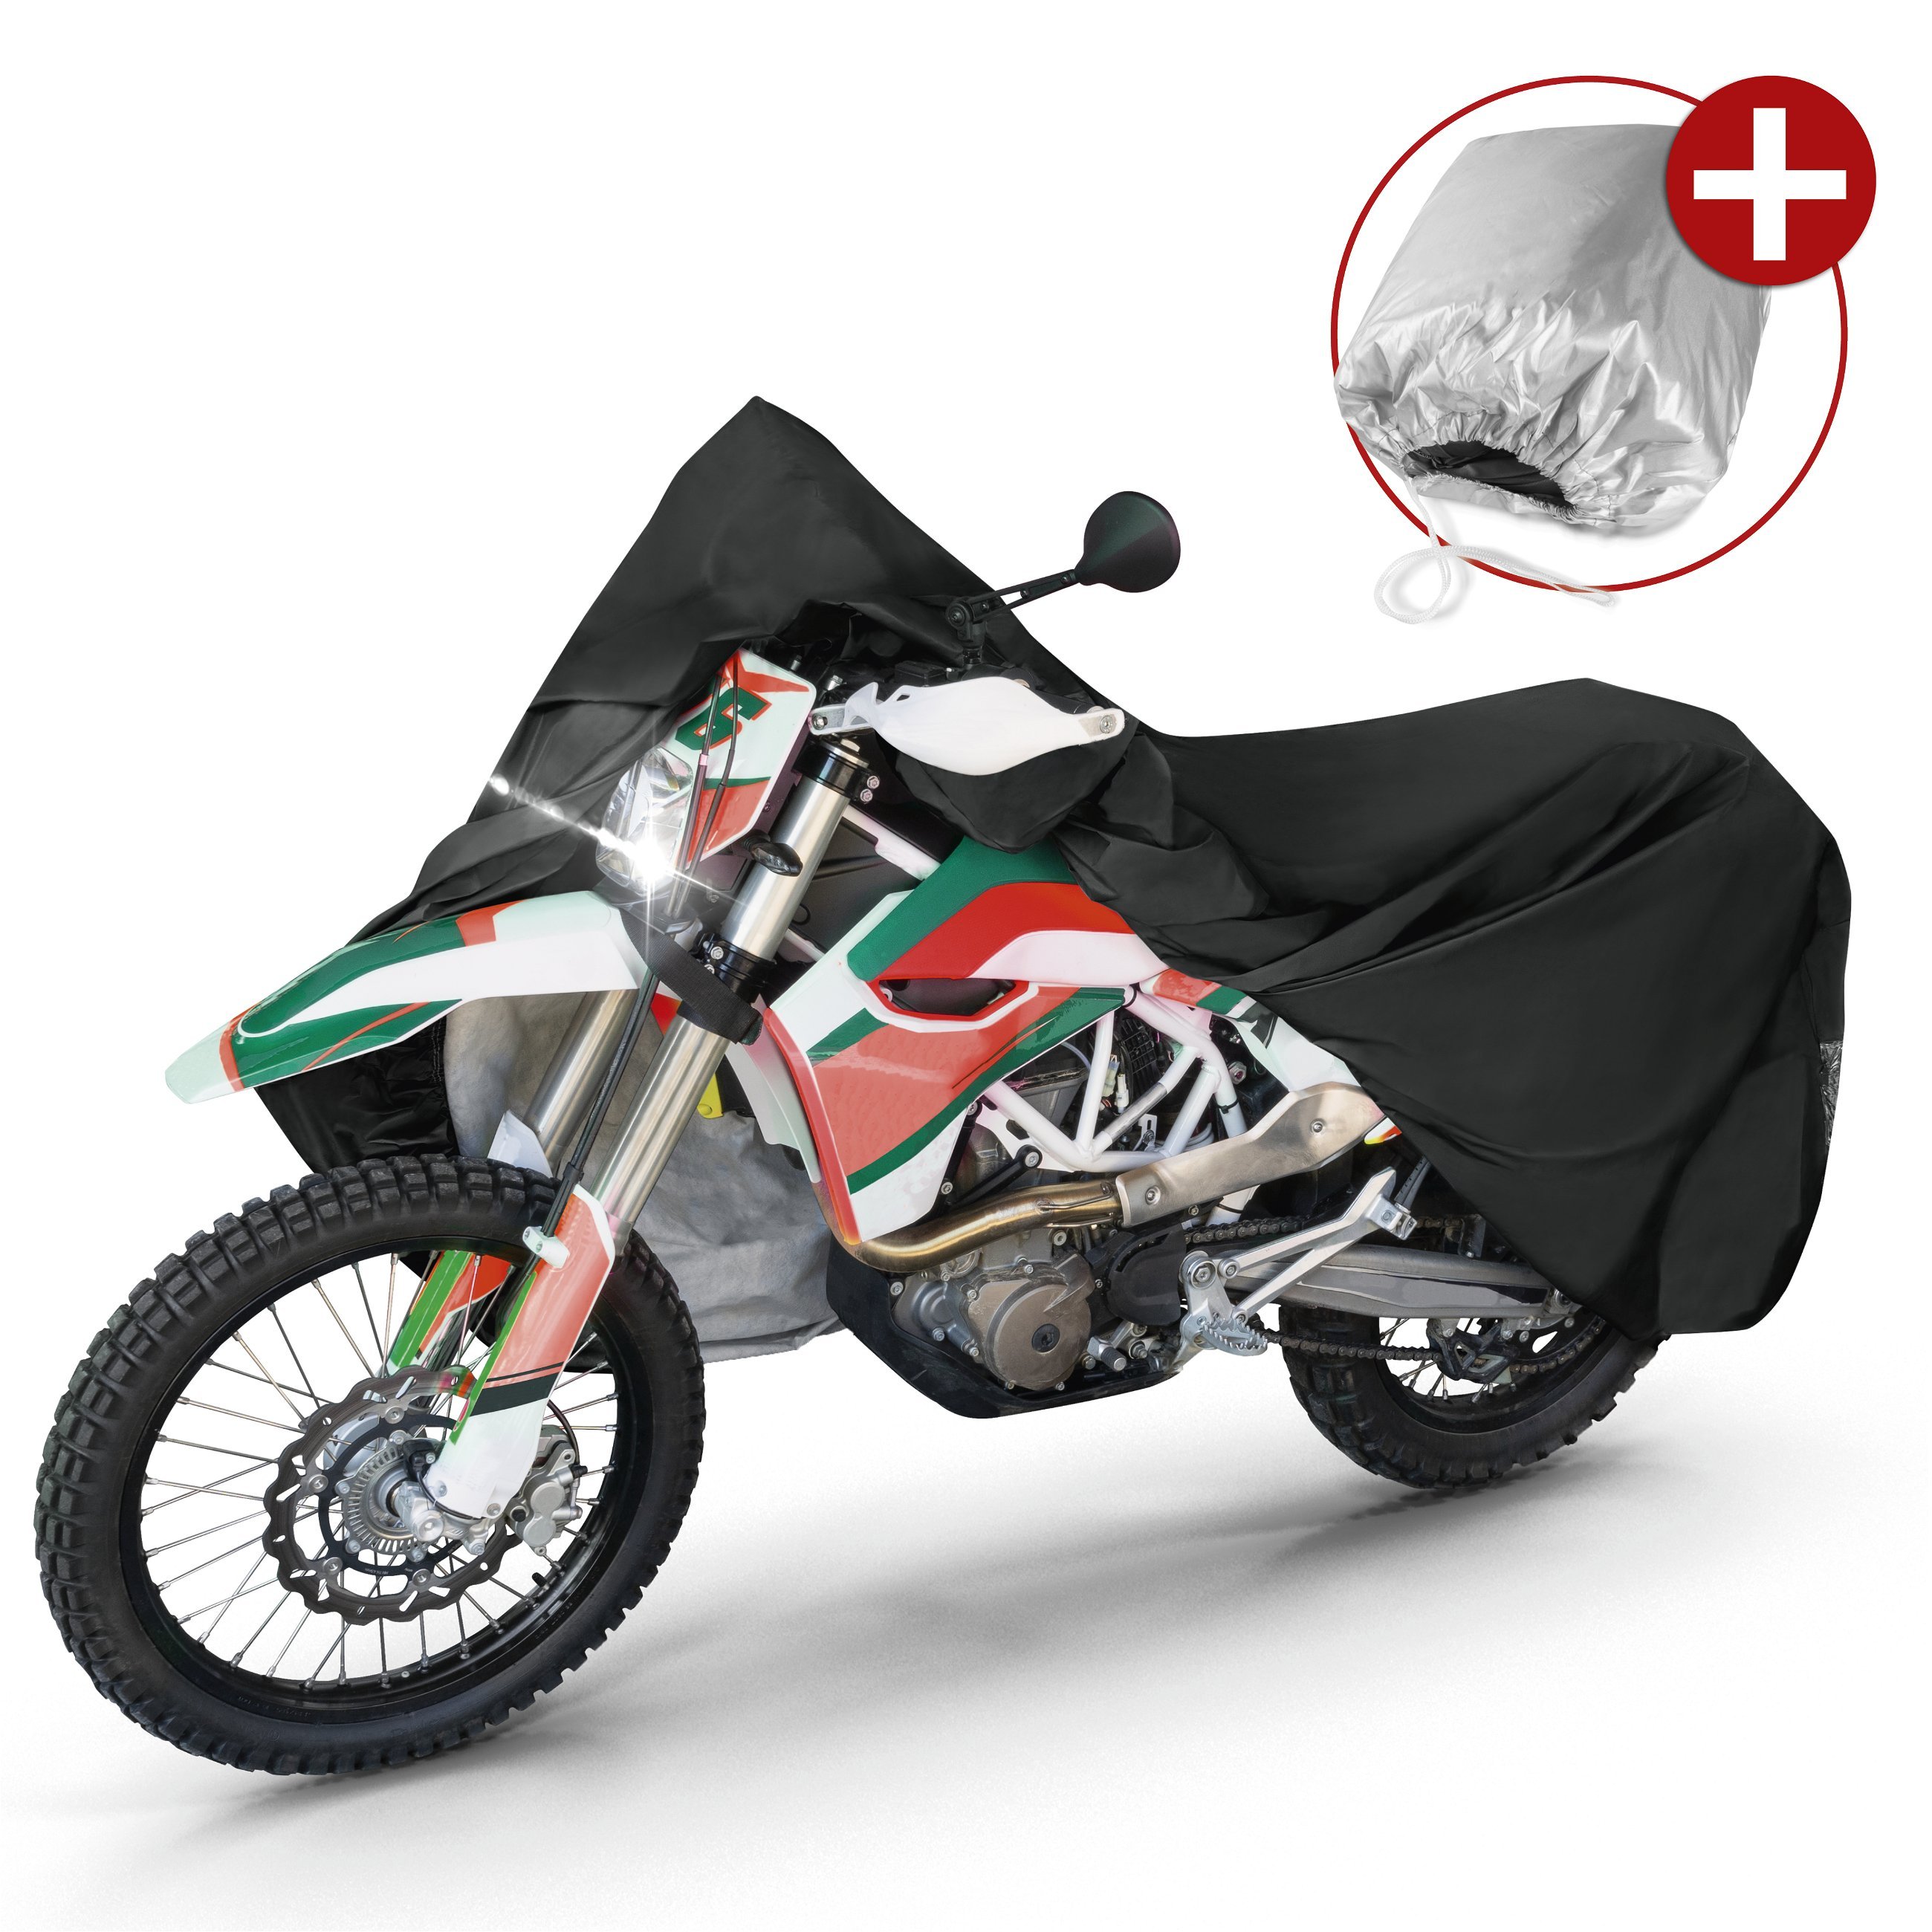 Motorcycle garage Enduro size XL PVC - 255 x 110 x 135 cm black